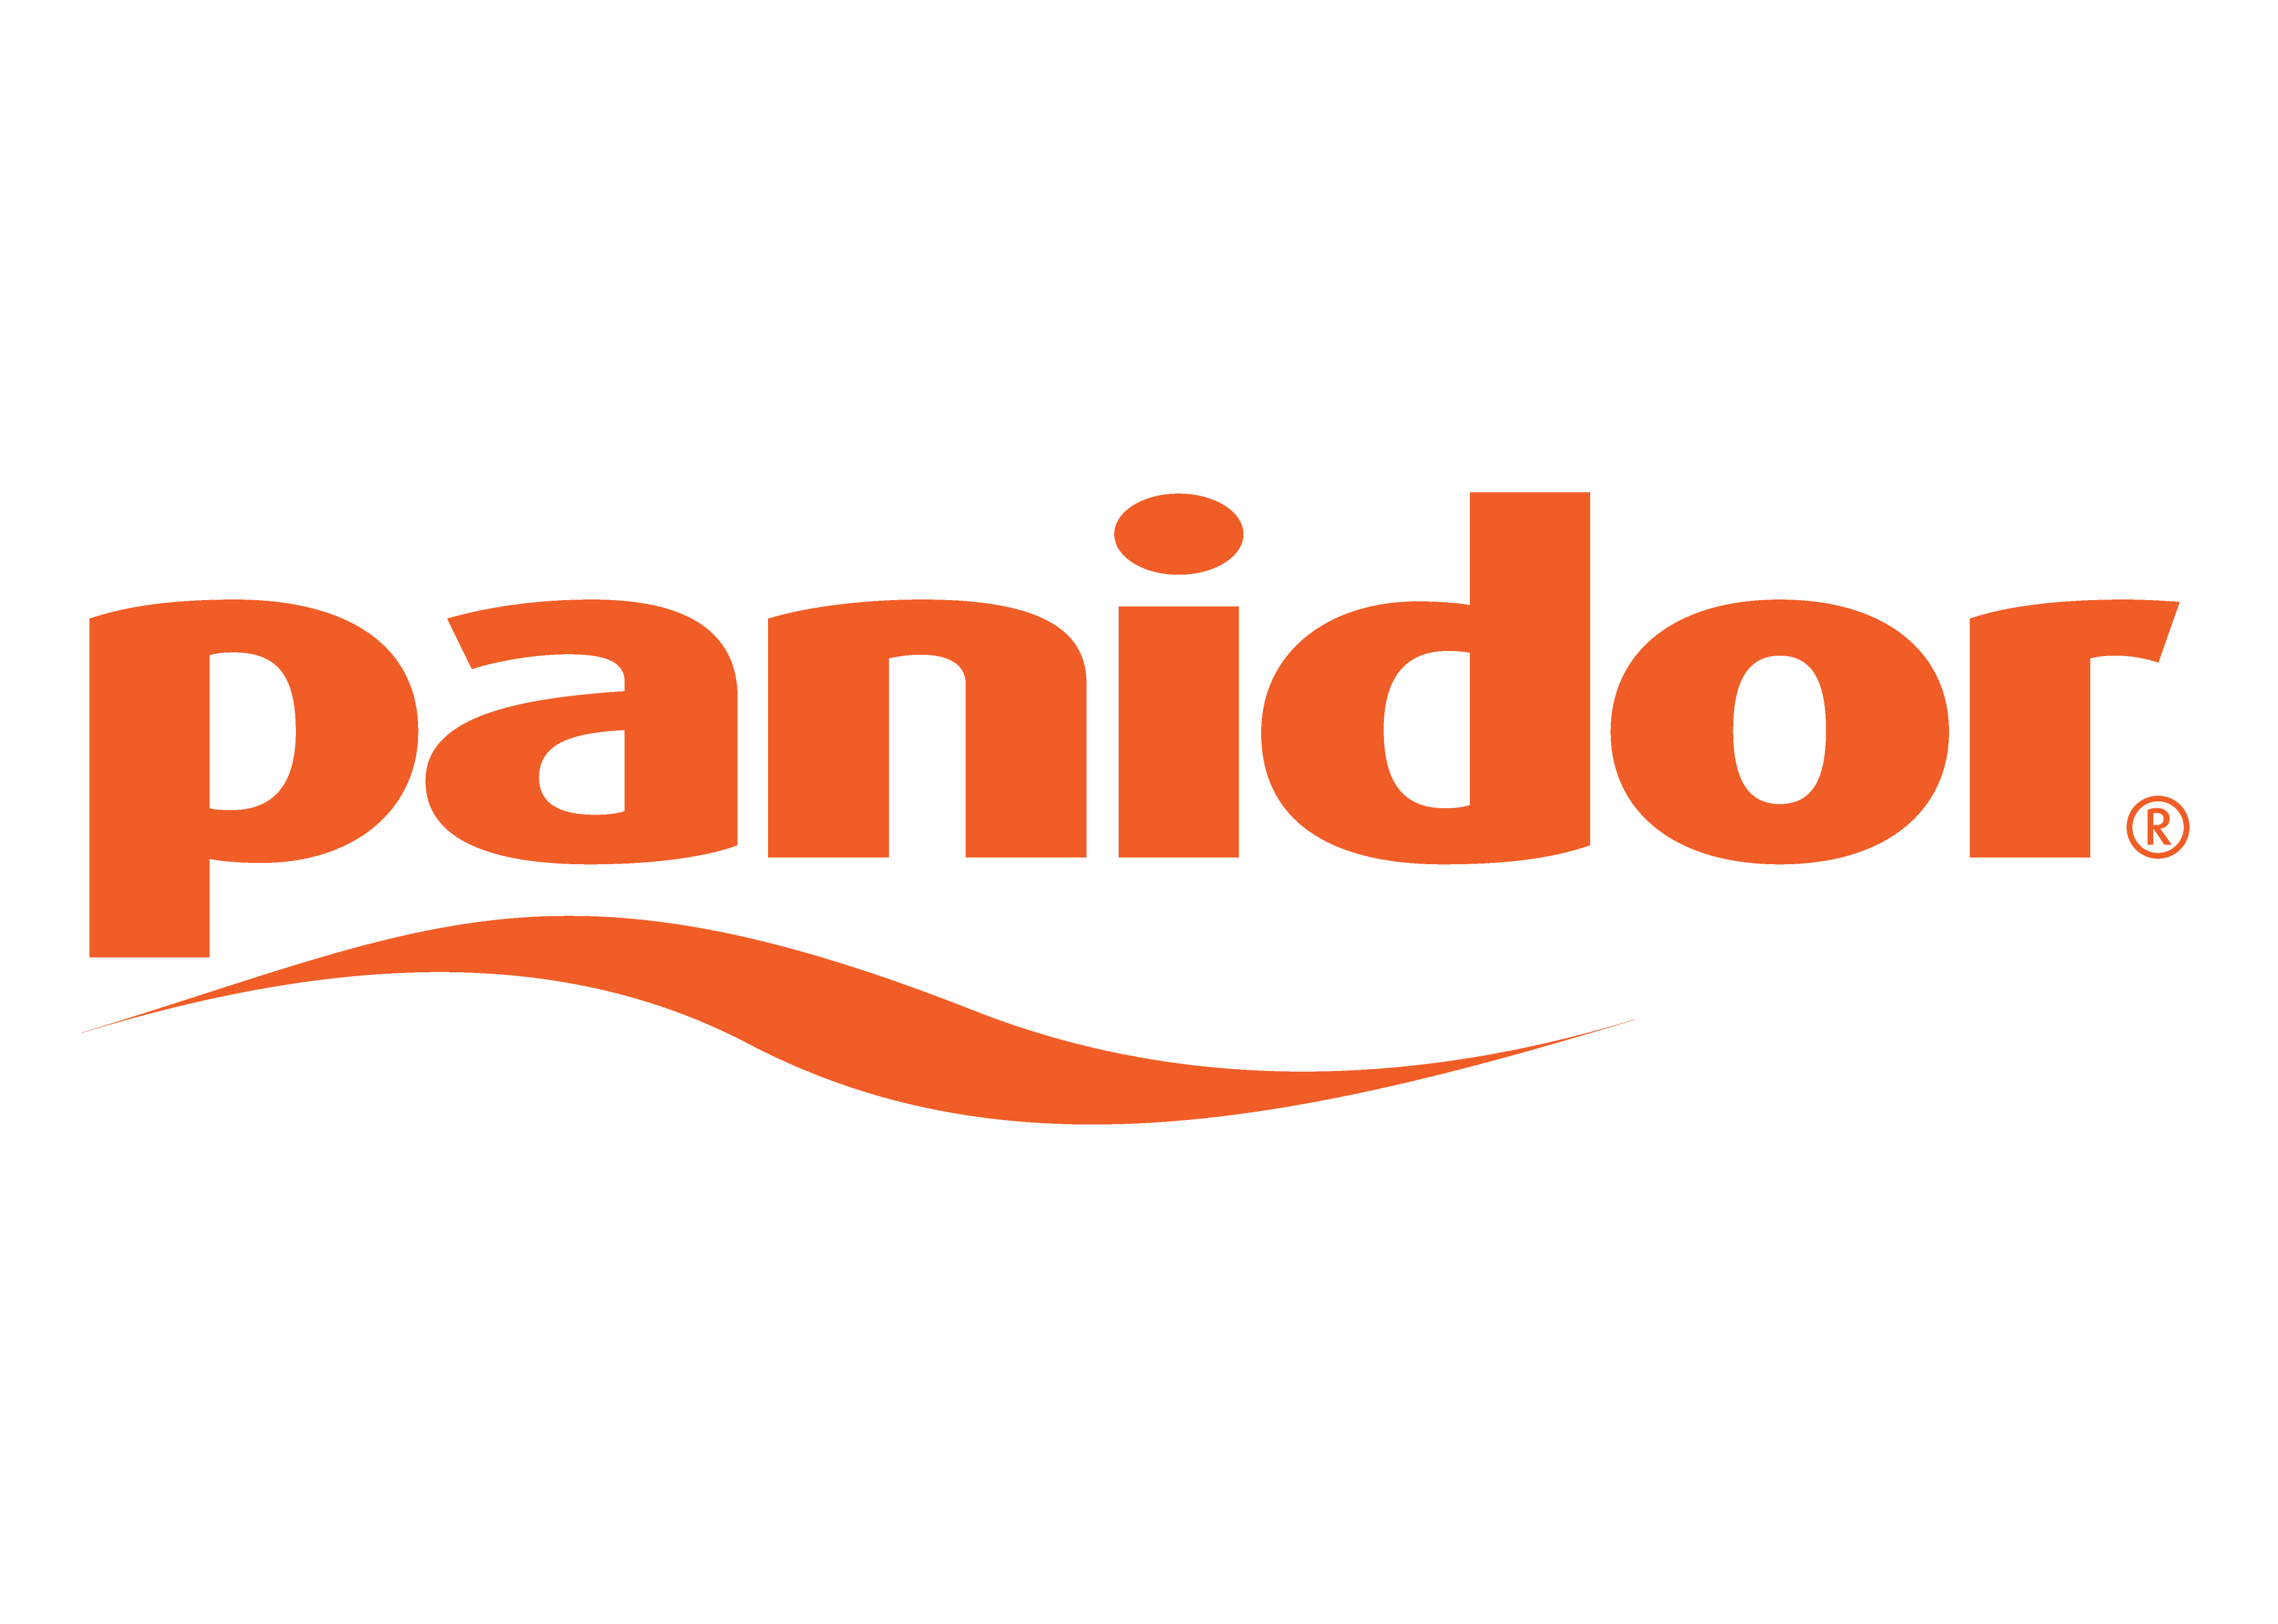 Panidor